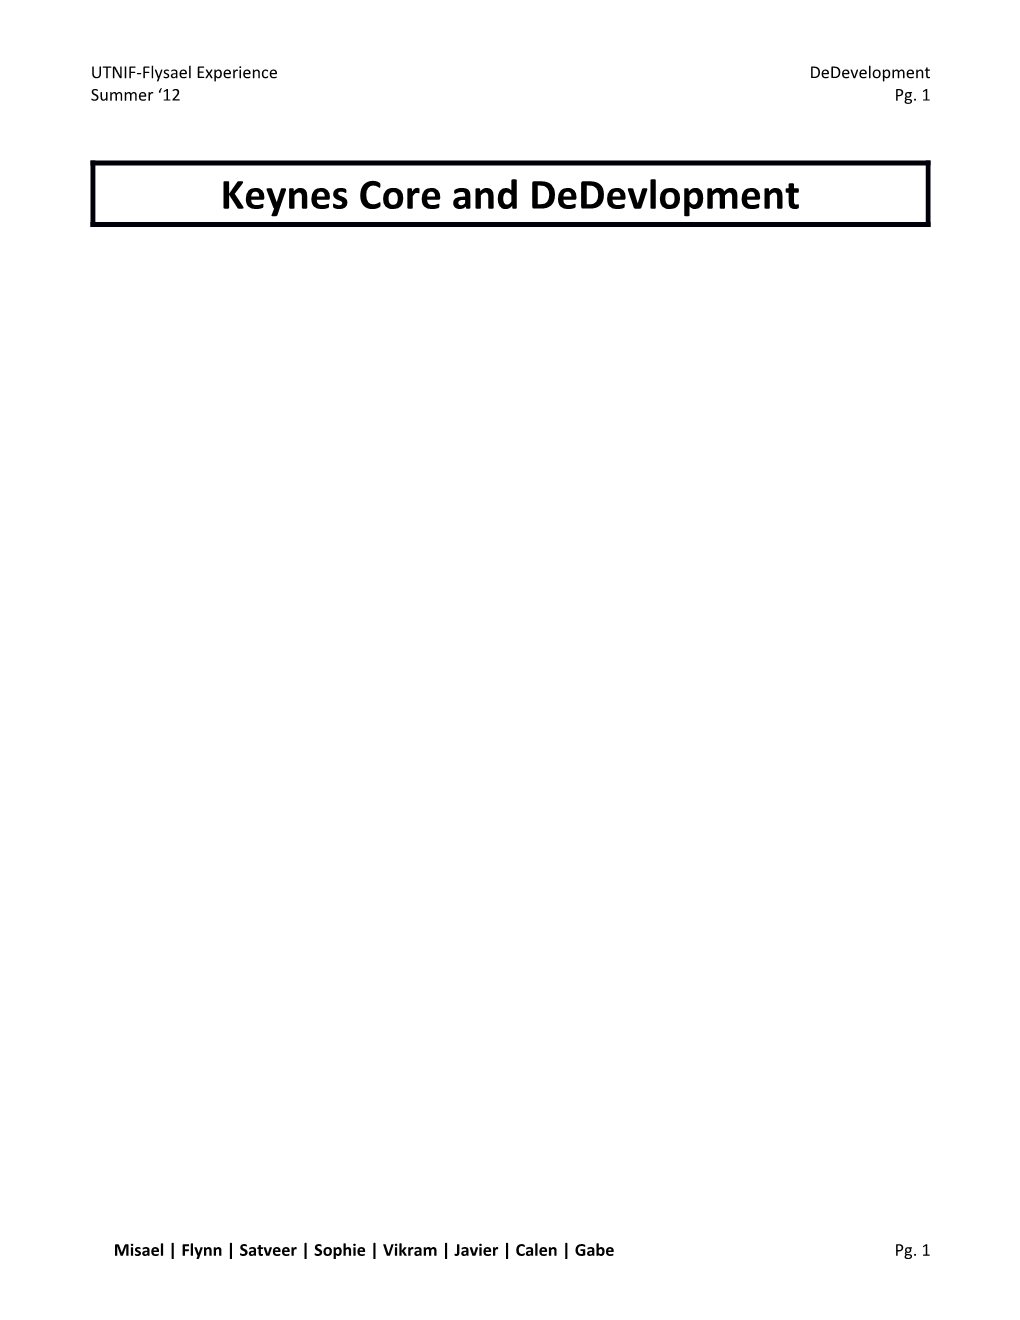 Keynes Core and Dedevlopment